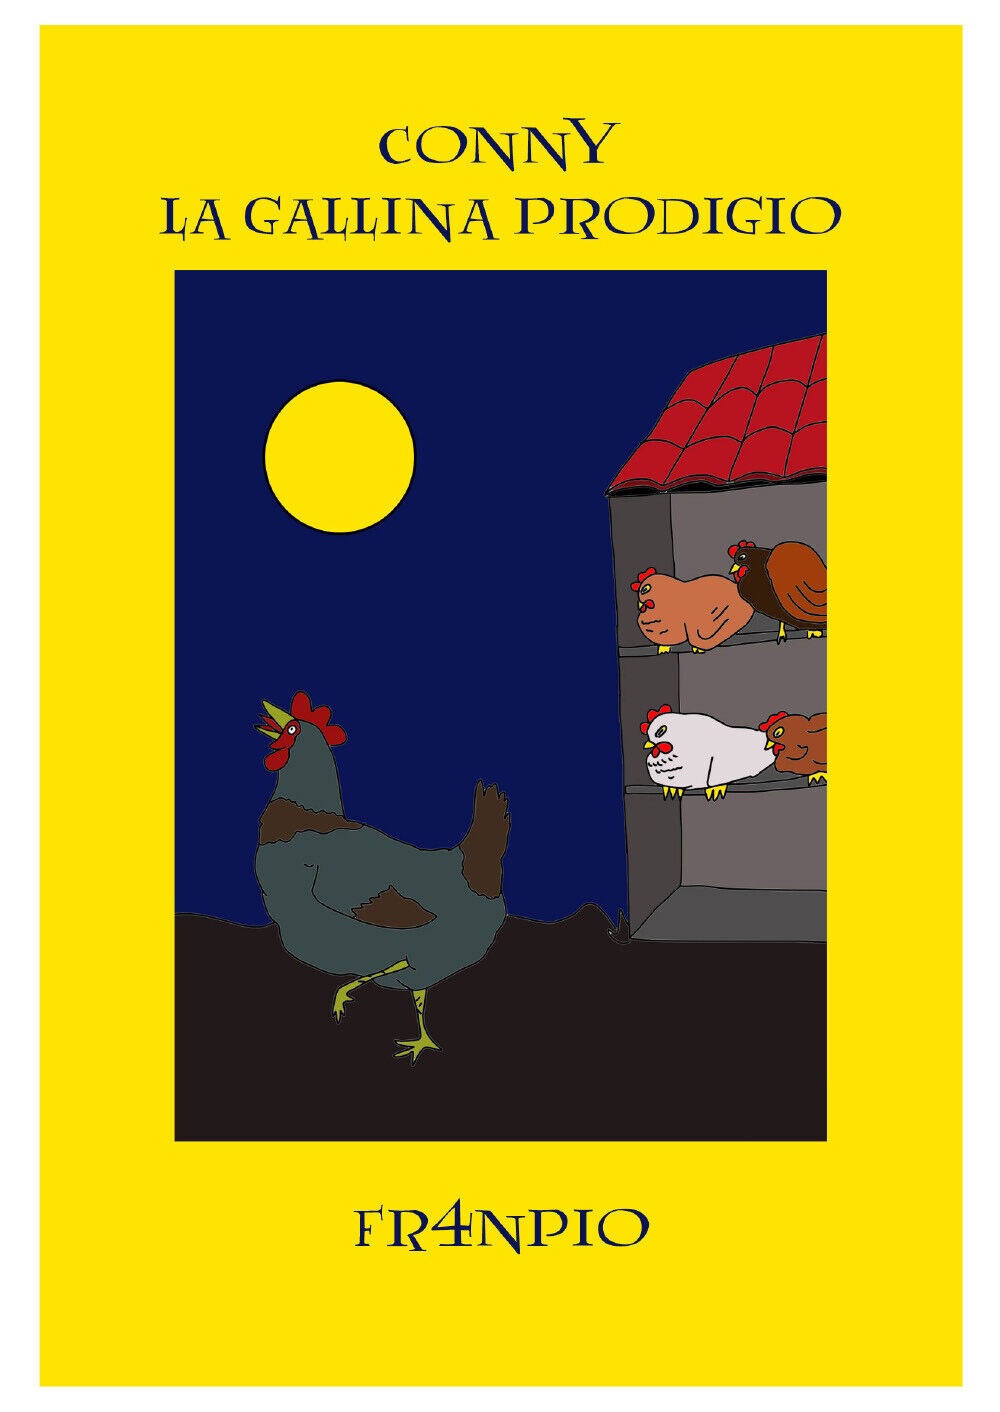 Conny la gallina prodigio  di Fr4npio,  2020,  Youcanprint